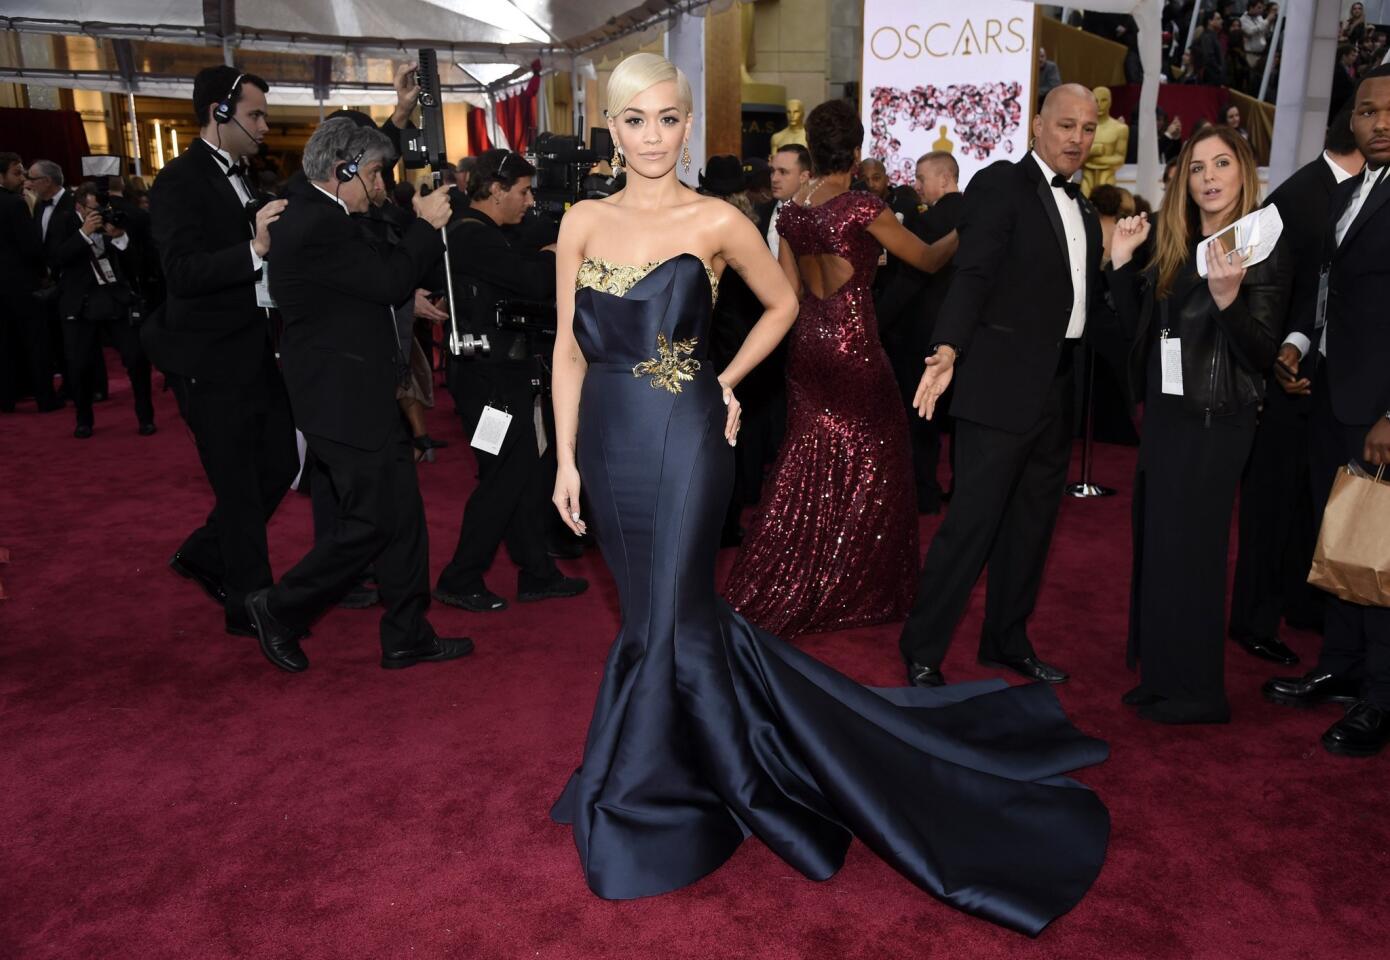 Worst dressed: Rita Ora